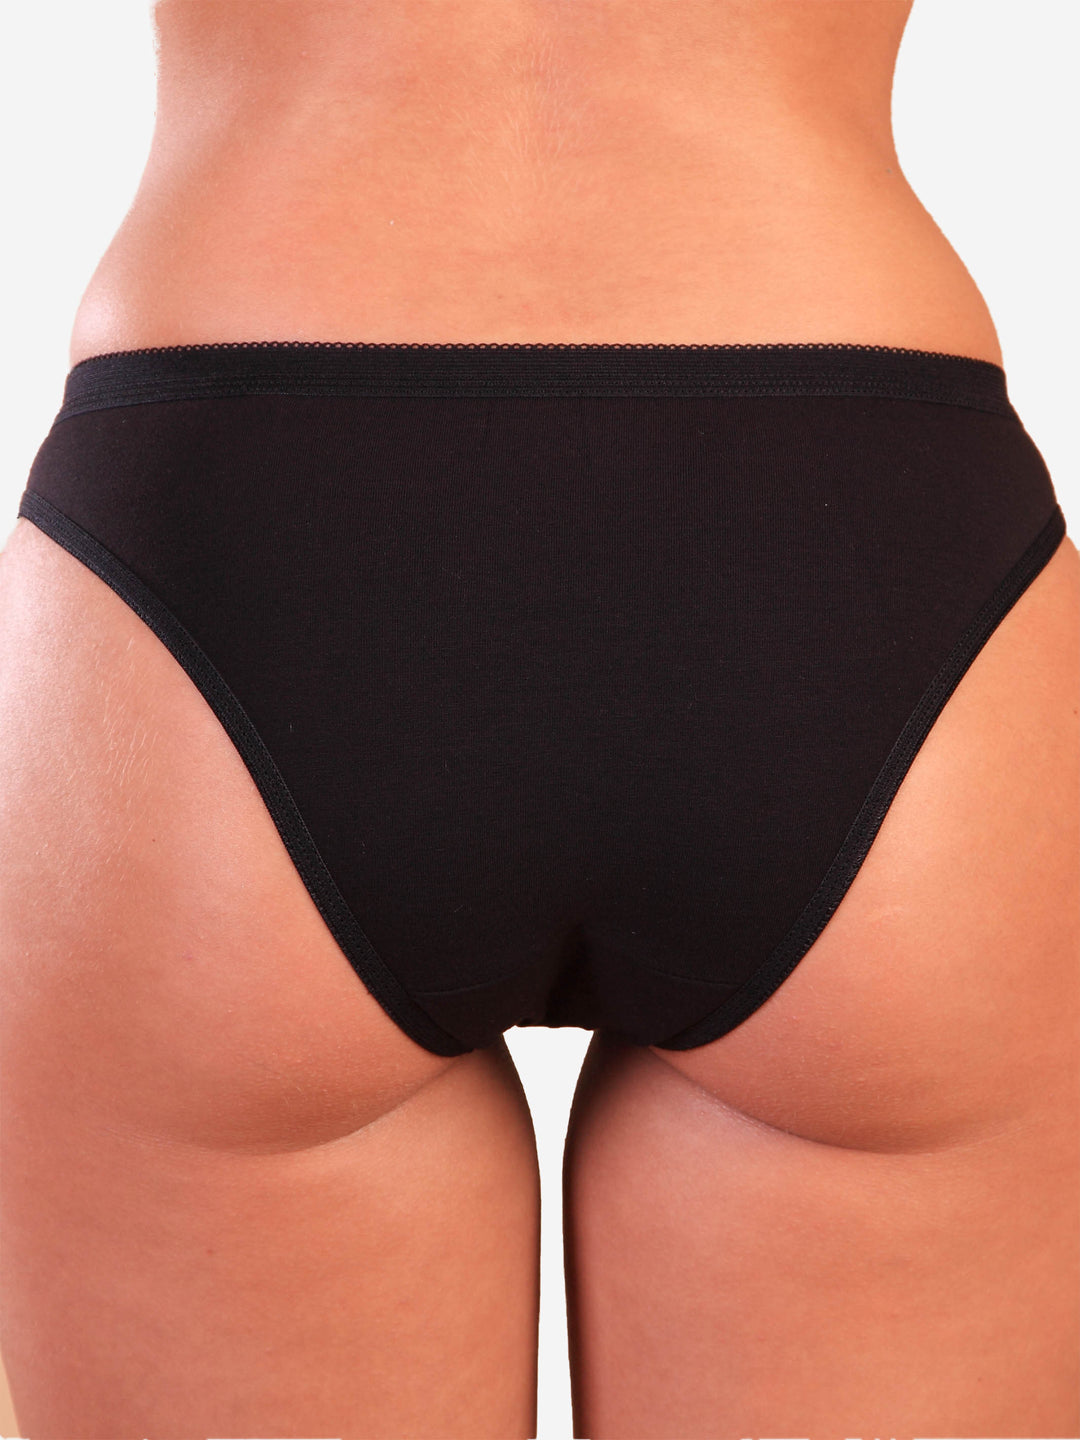 Middle waist simple cotton panty - Black - (520-black)